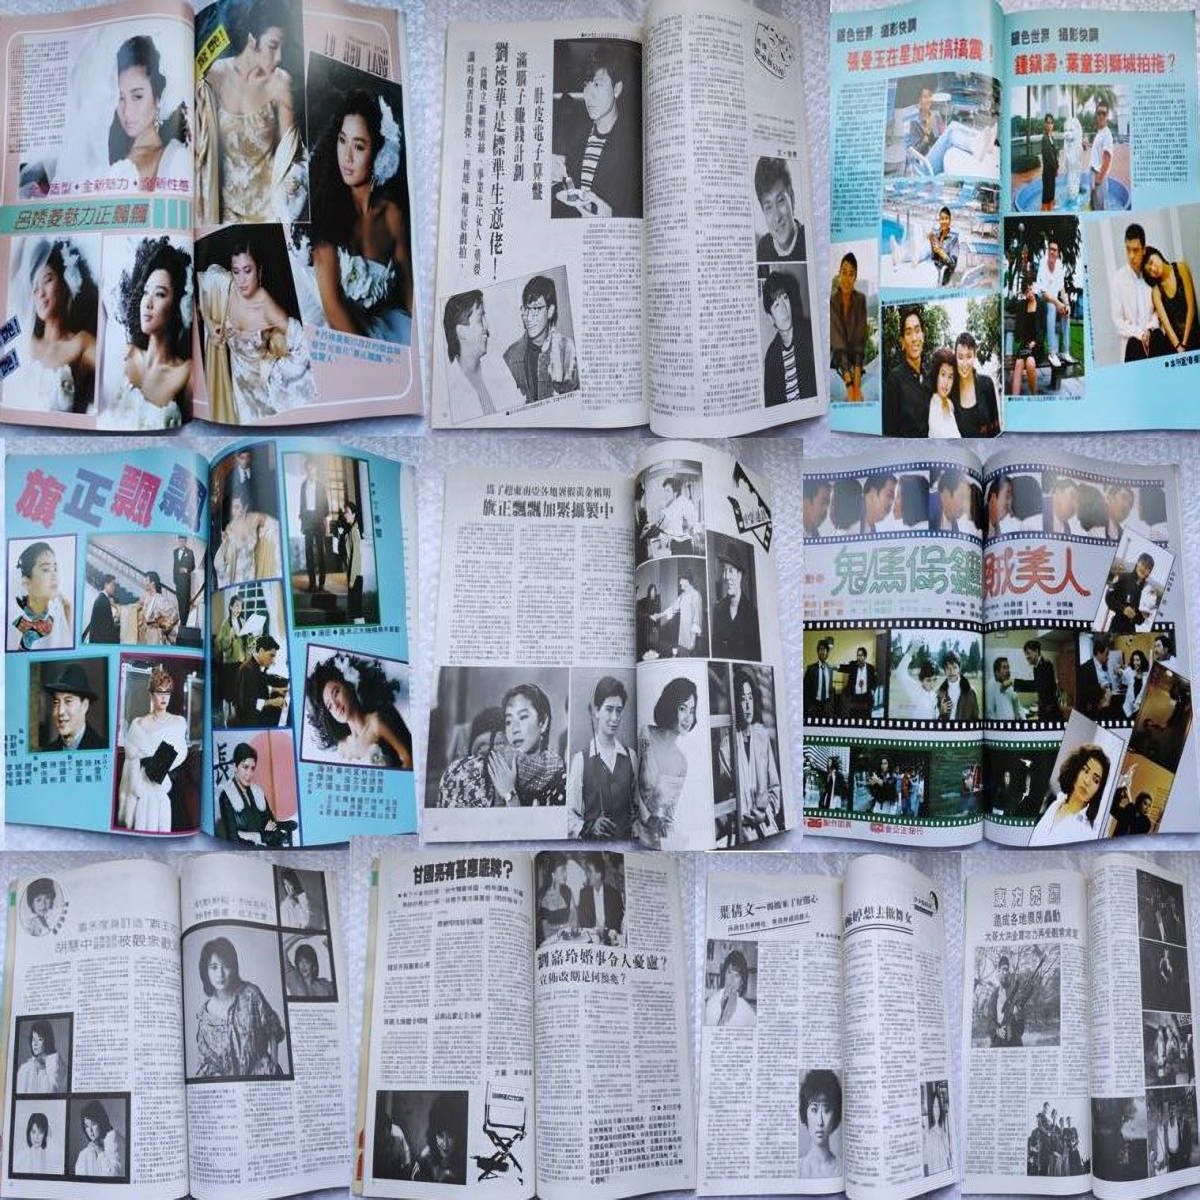 梅艶芳 アニタムイ 表紙 香港 映画雑誌「銀色世界」1987年8月211号& 1989年1月228号+「是這様的 」香港版 CD_画像4